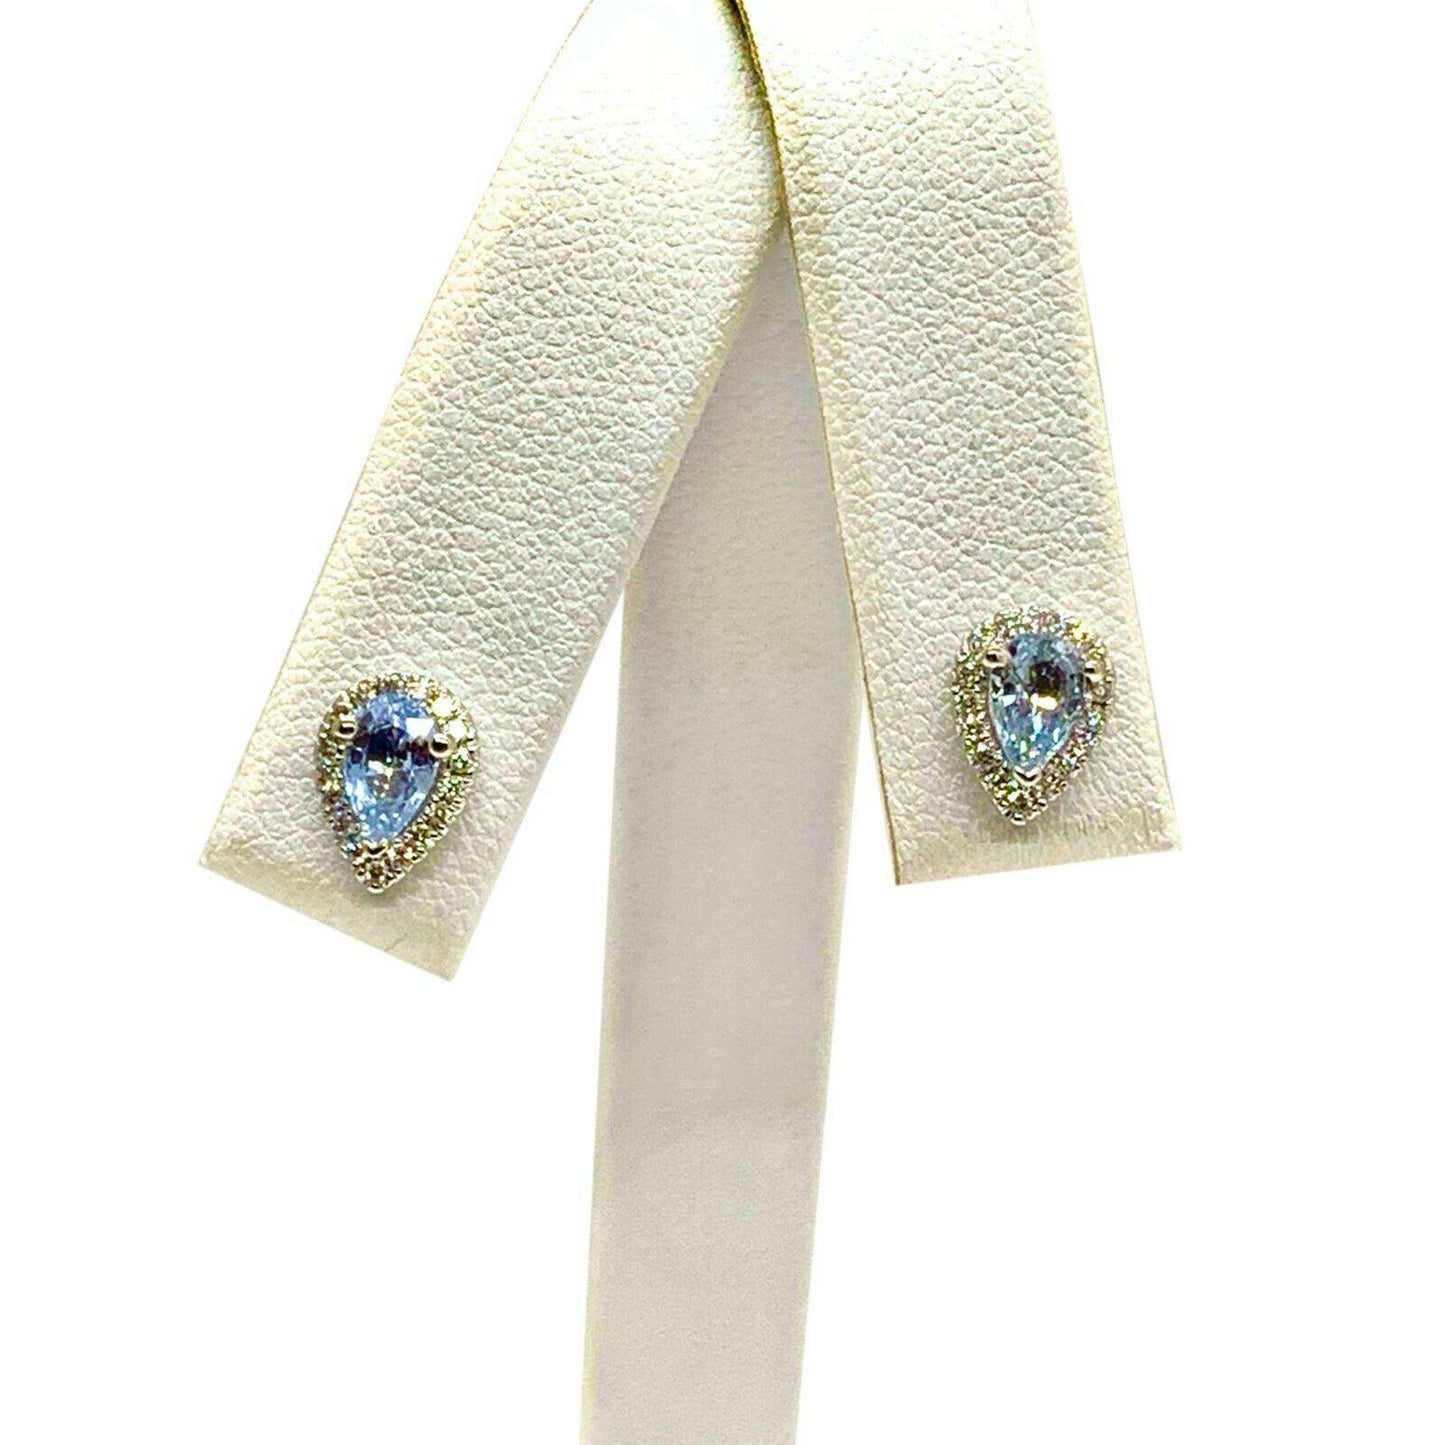 Diamond Blue Sapphire Earrings 18k Gold Certified $2,295 921740 - Certified Estate Jewelry